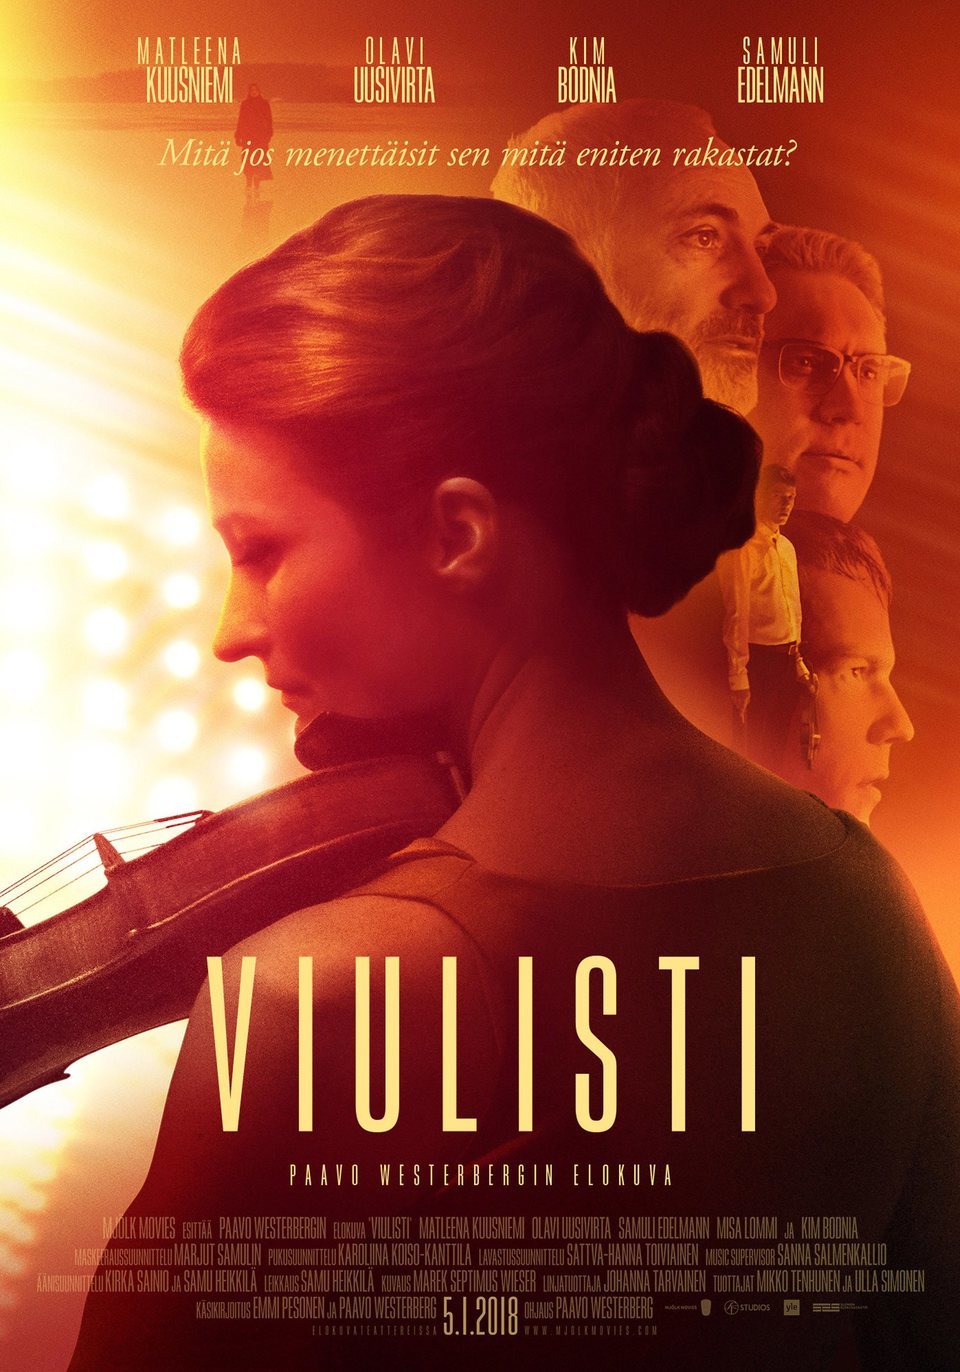 Cartel de The Violin Player - Finlandia